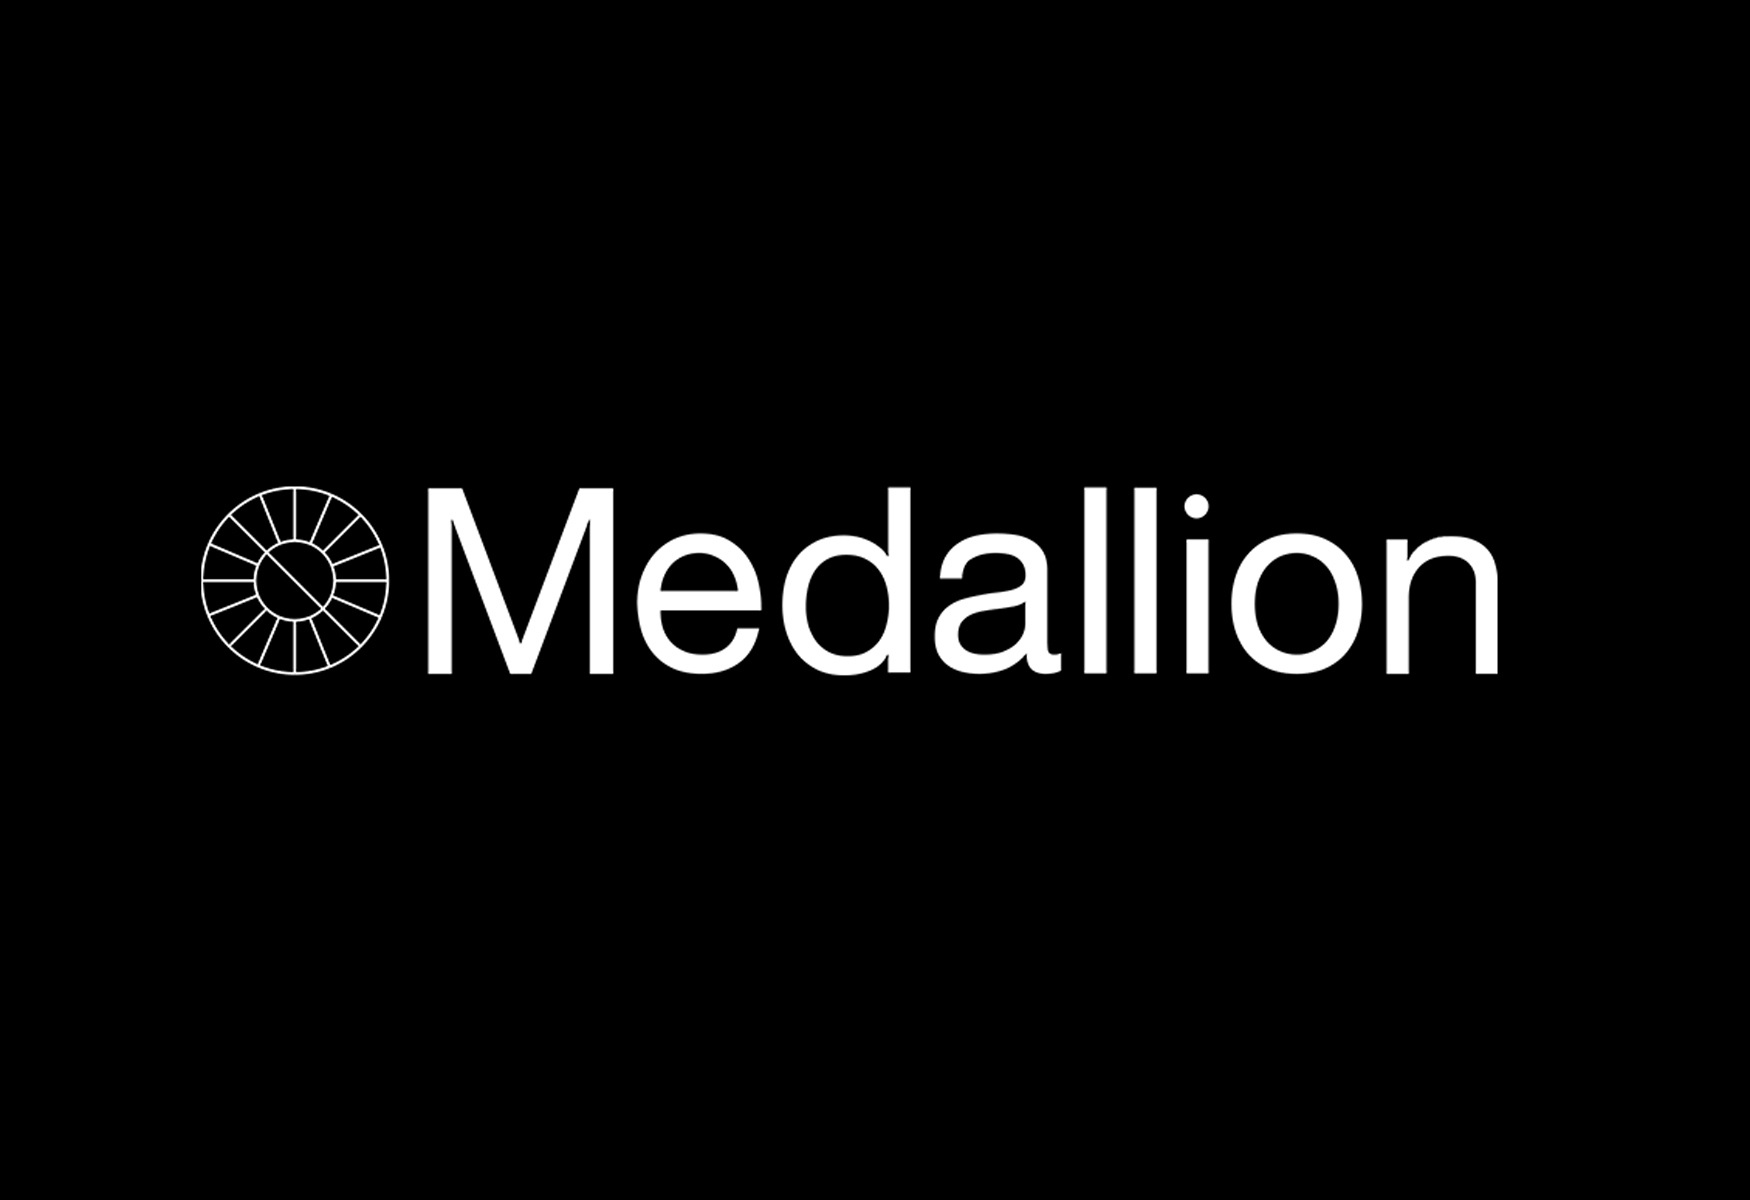 Medallion Raises $13.7M To Revolutionize Artist-Fan Connections